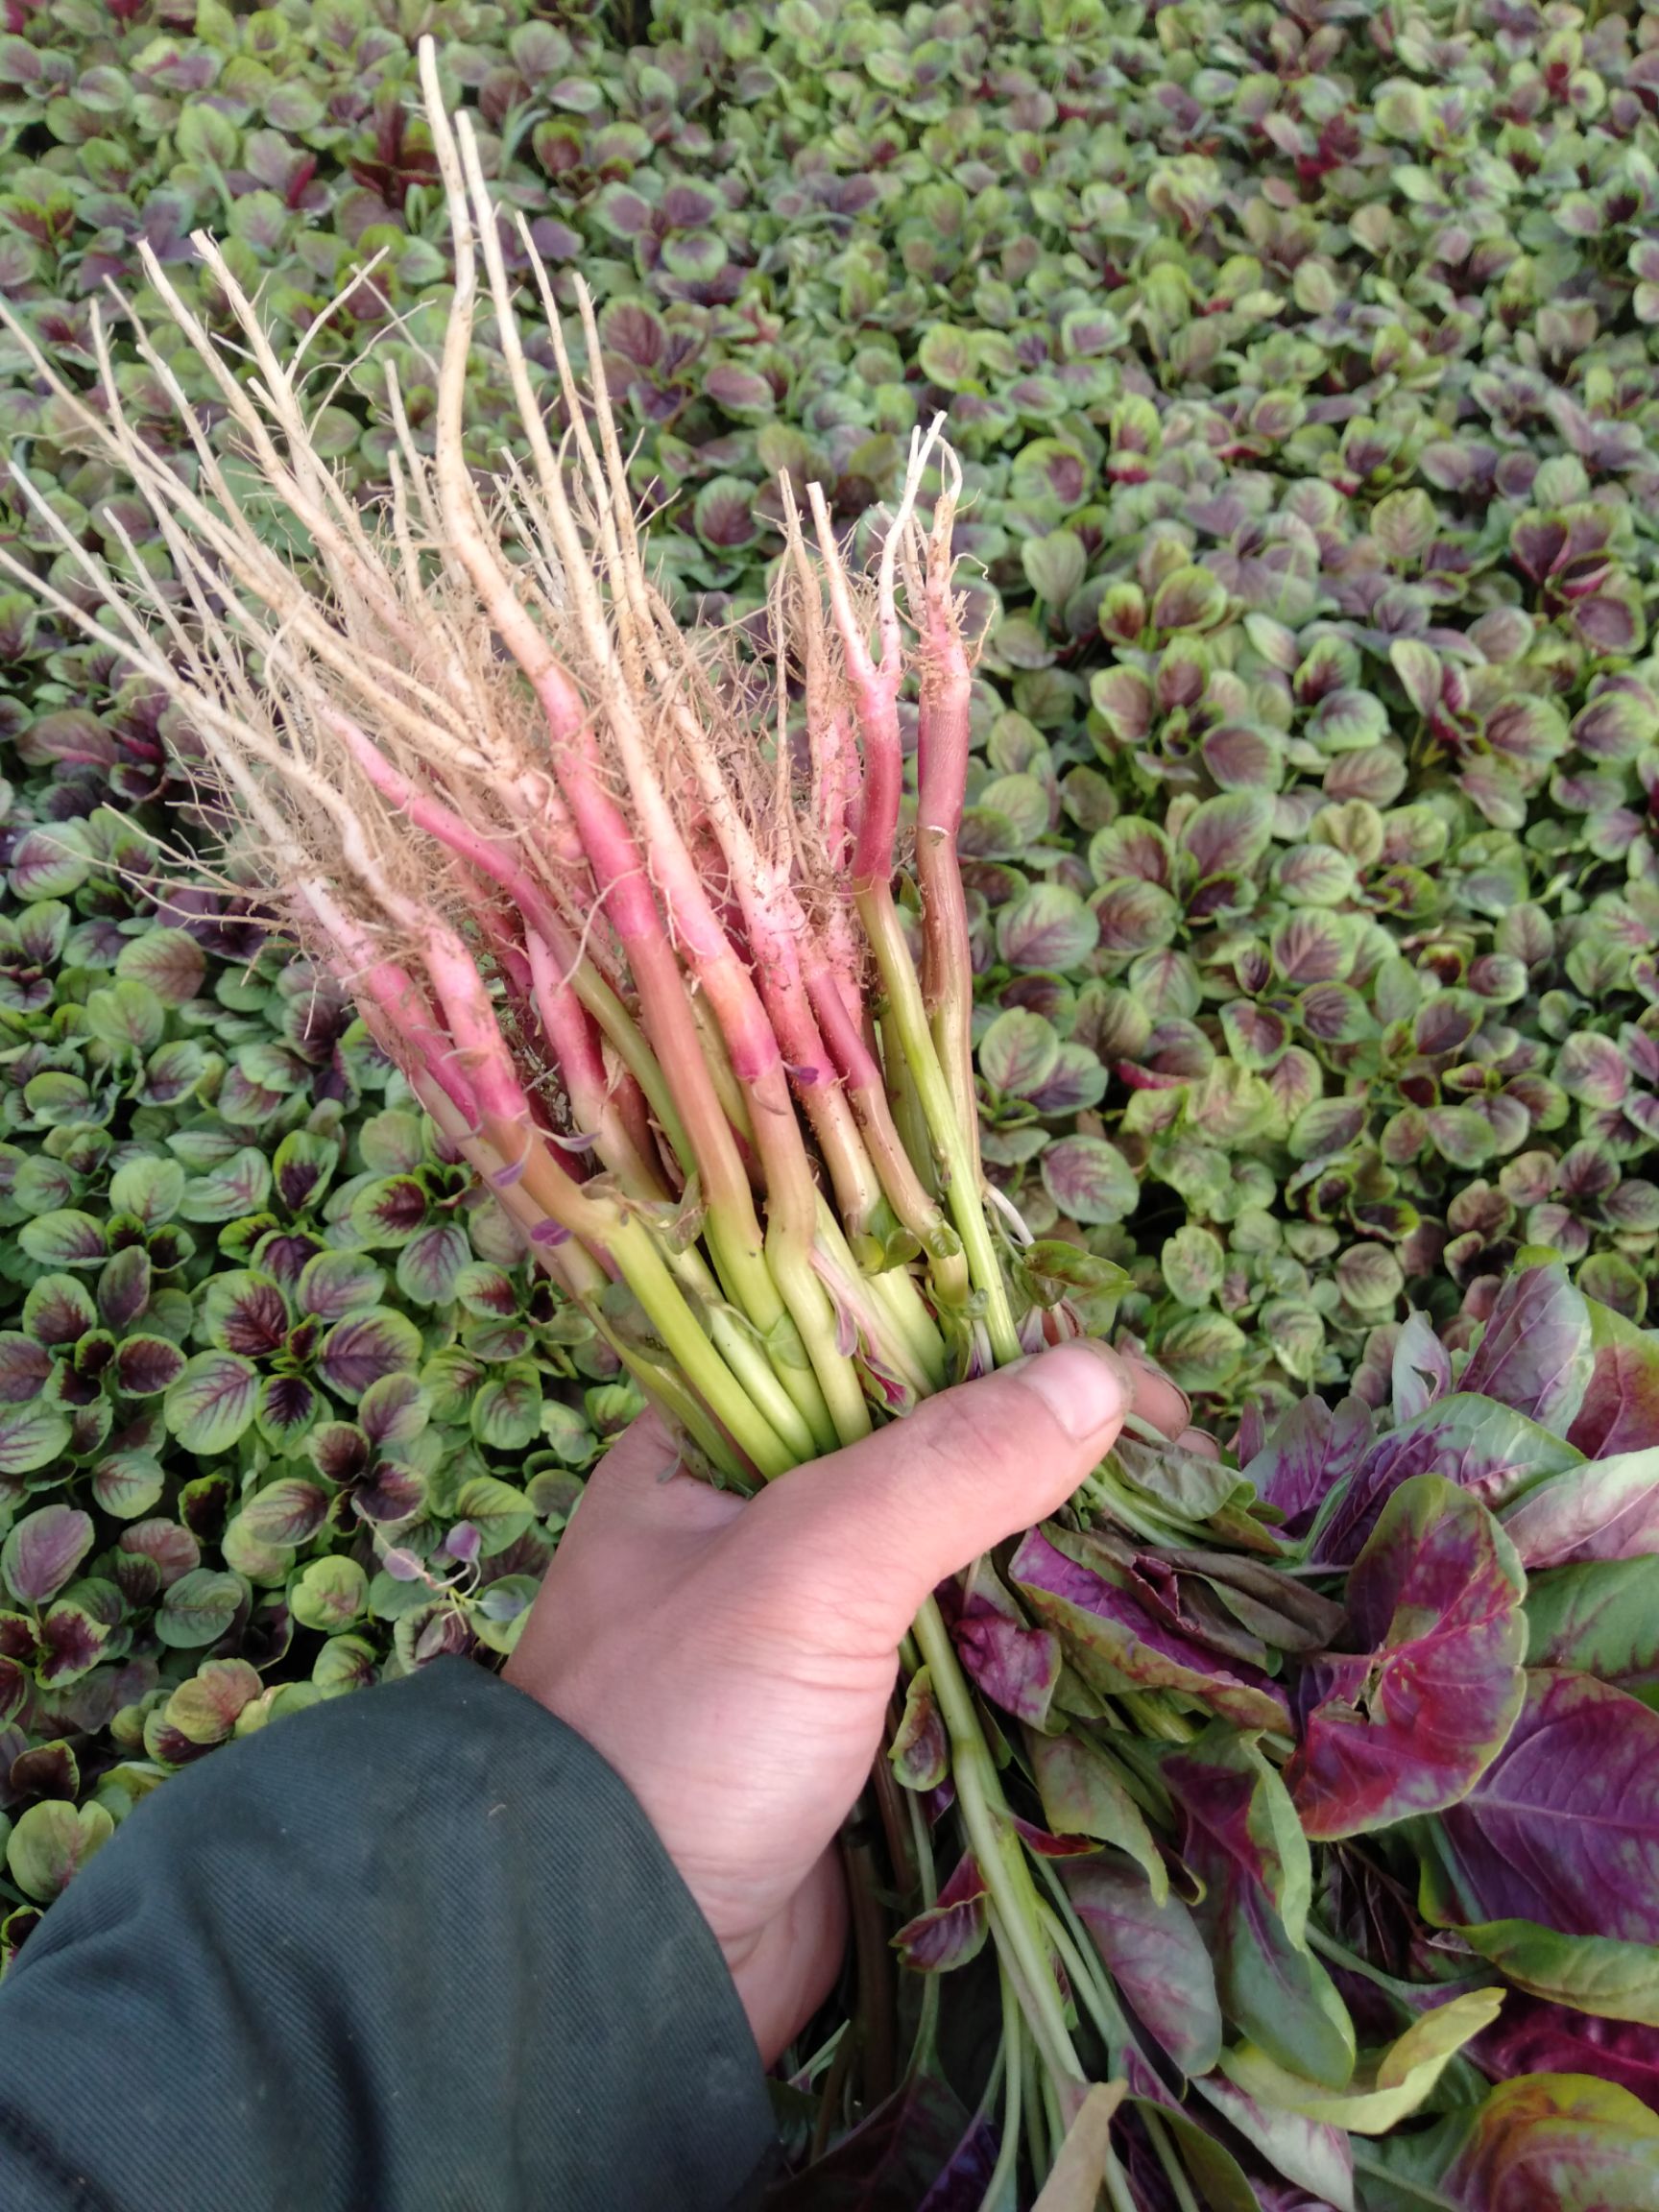 品种名:红苋菜 长度:25-30cm 颜色:鲜绿 种植环境:大棚种植